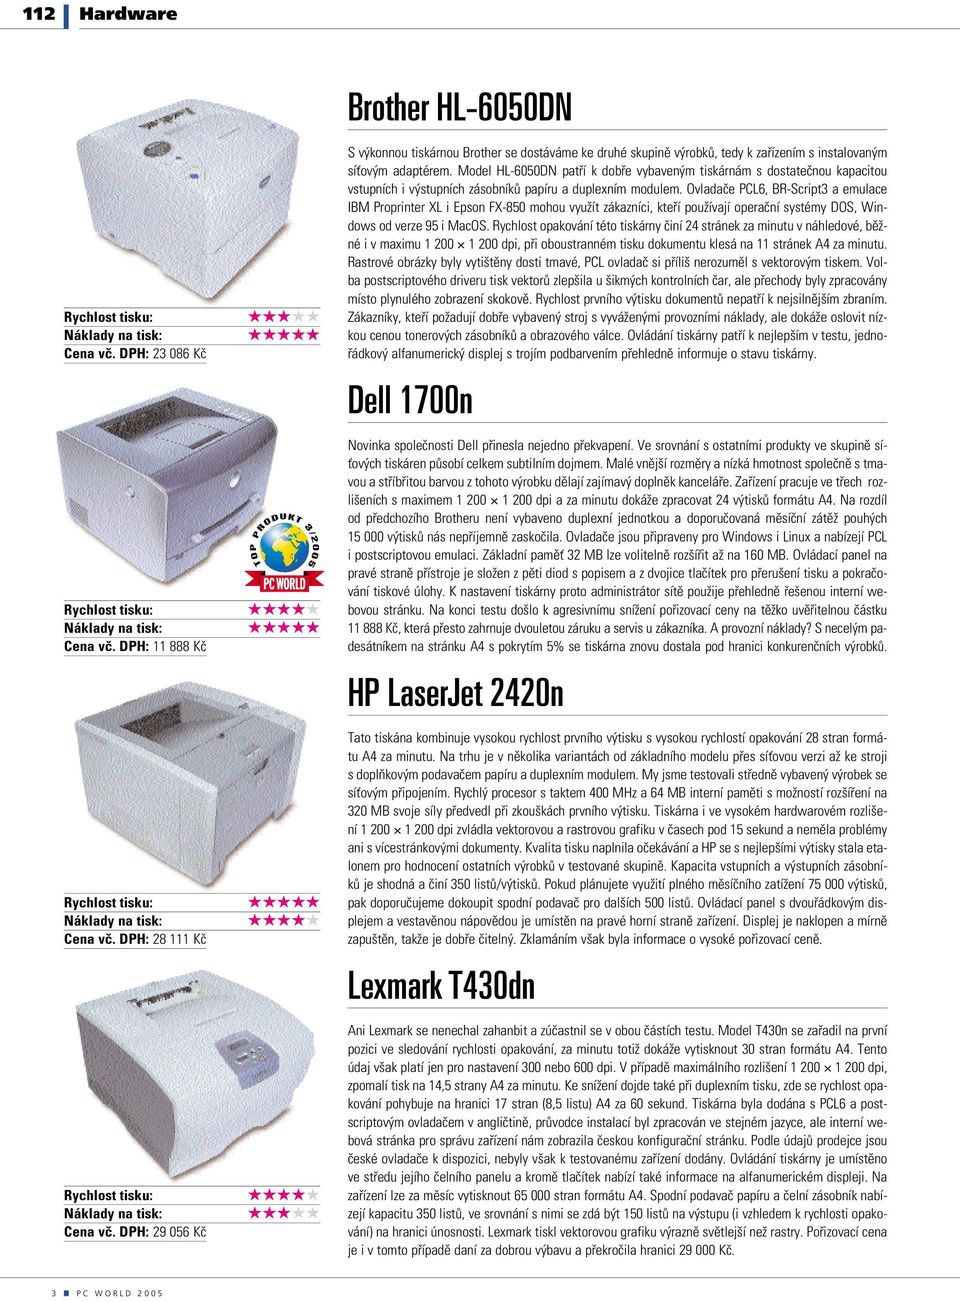 Model HL-6050DN patří k dobře vybaveným tiskárnám s dostatečnou kapacitou vstupních i výstupních zásobníků papíru a duplexním modulem.